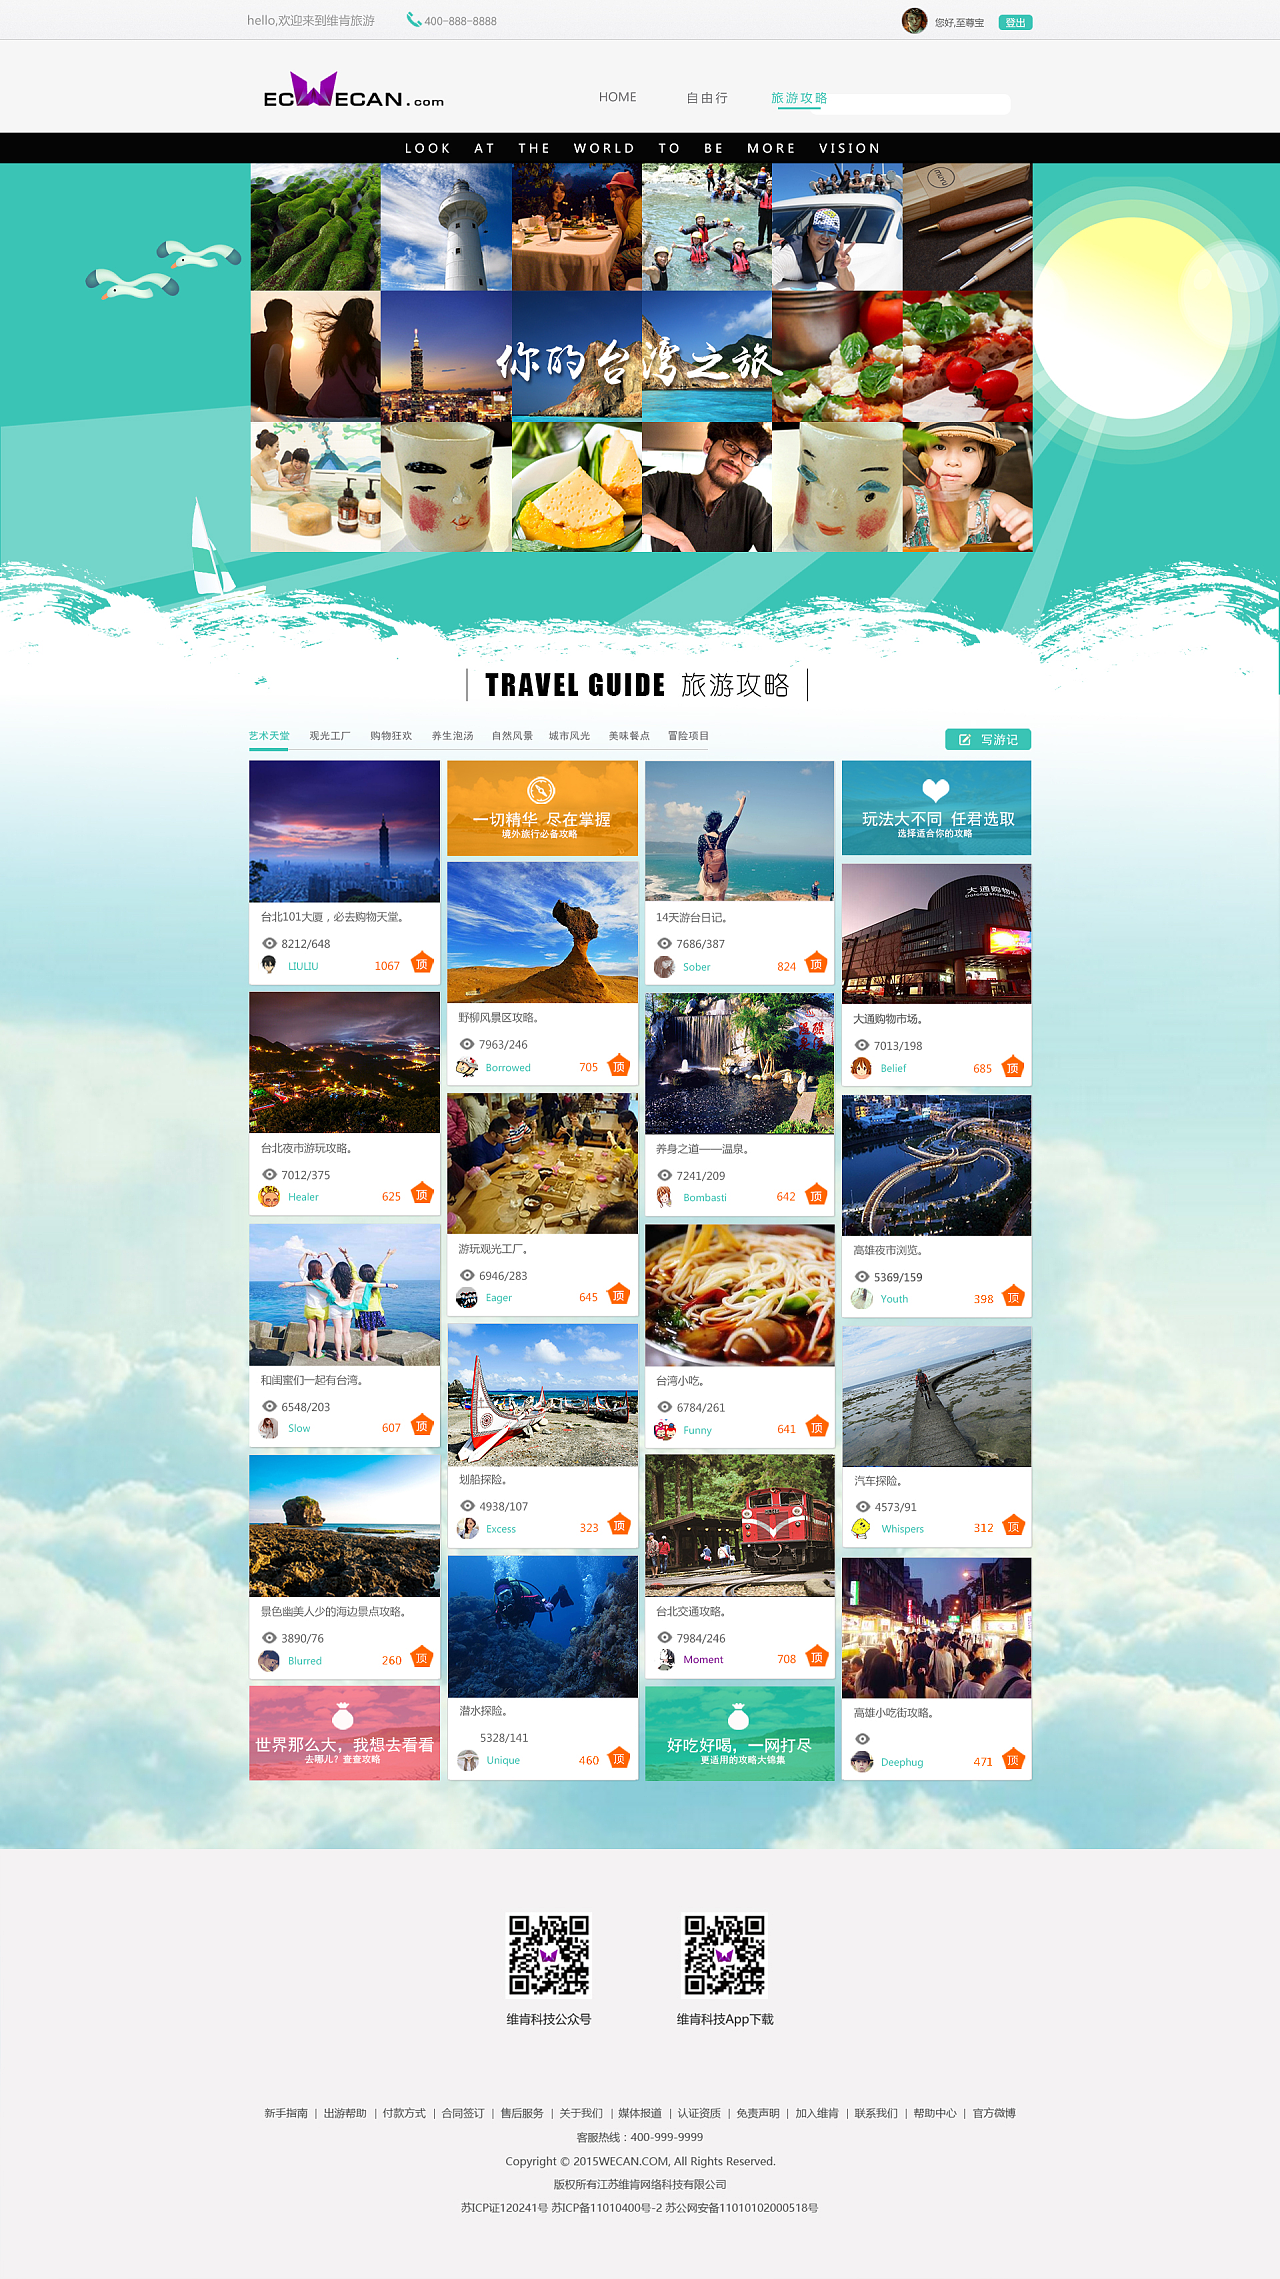 旅游类网站制作,攻略及自由行和会员中心页面设计